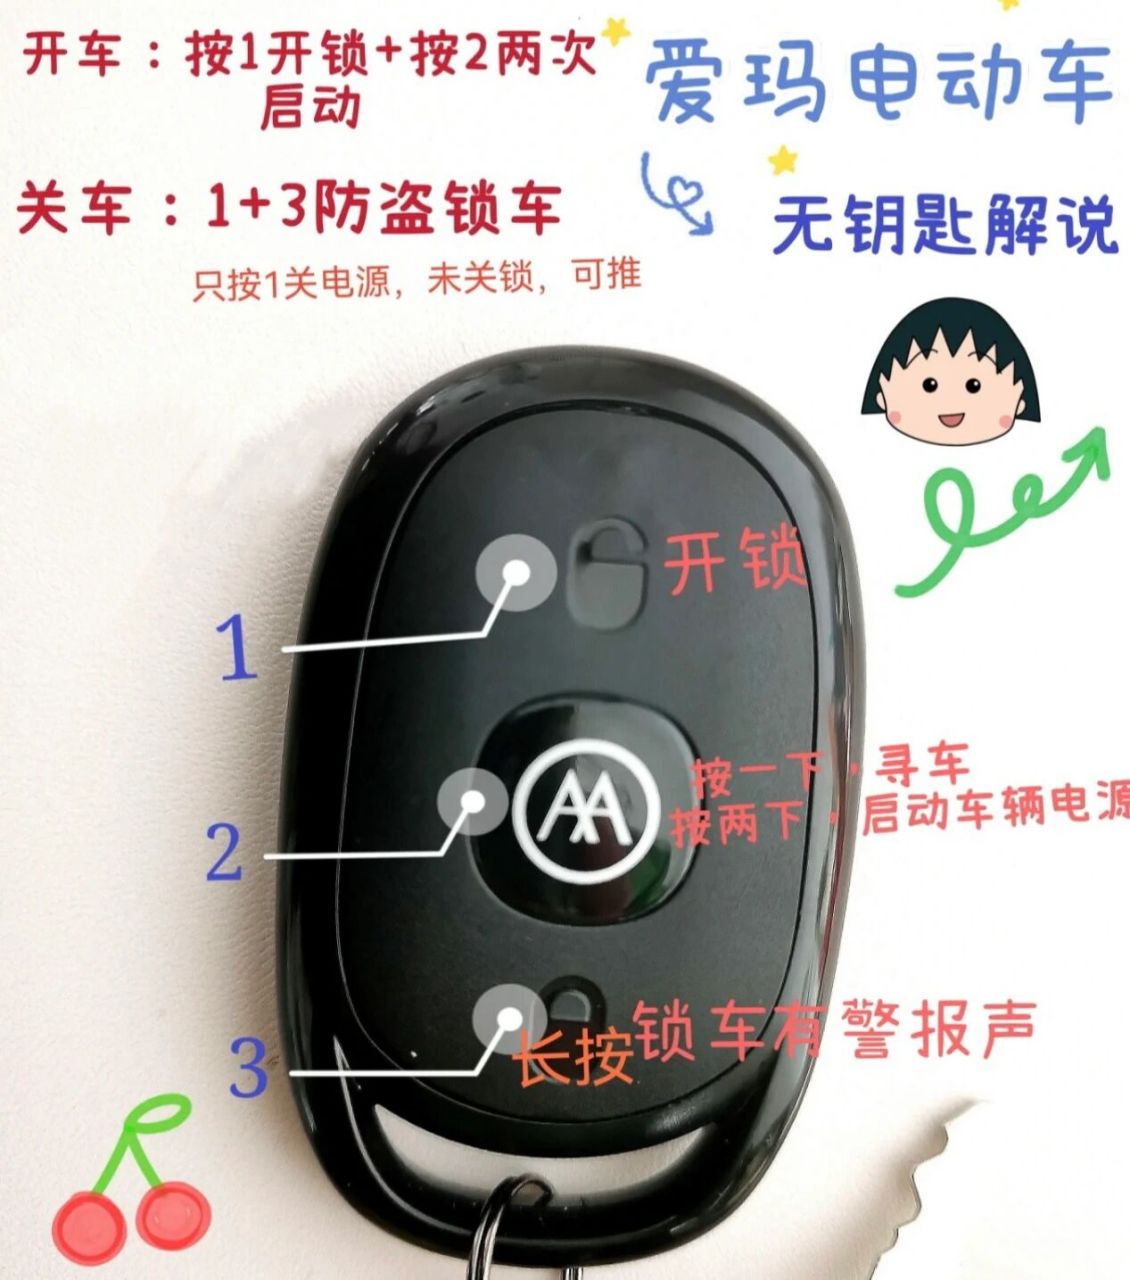 爱玛电动车遥控钥匙使用说明 爱玛电动车钥匙通常有三个按键,从上往下